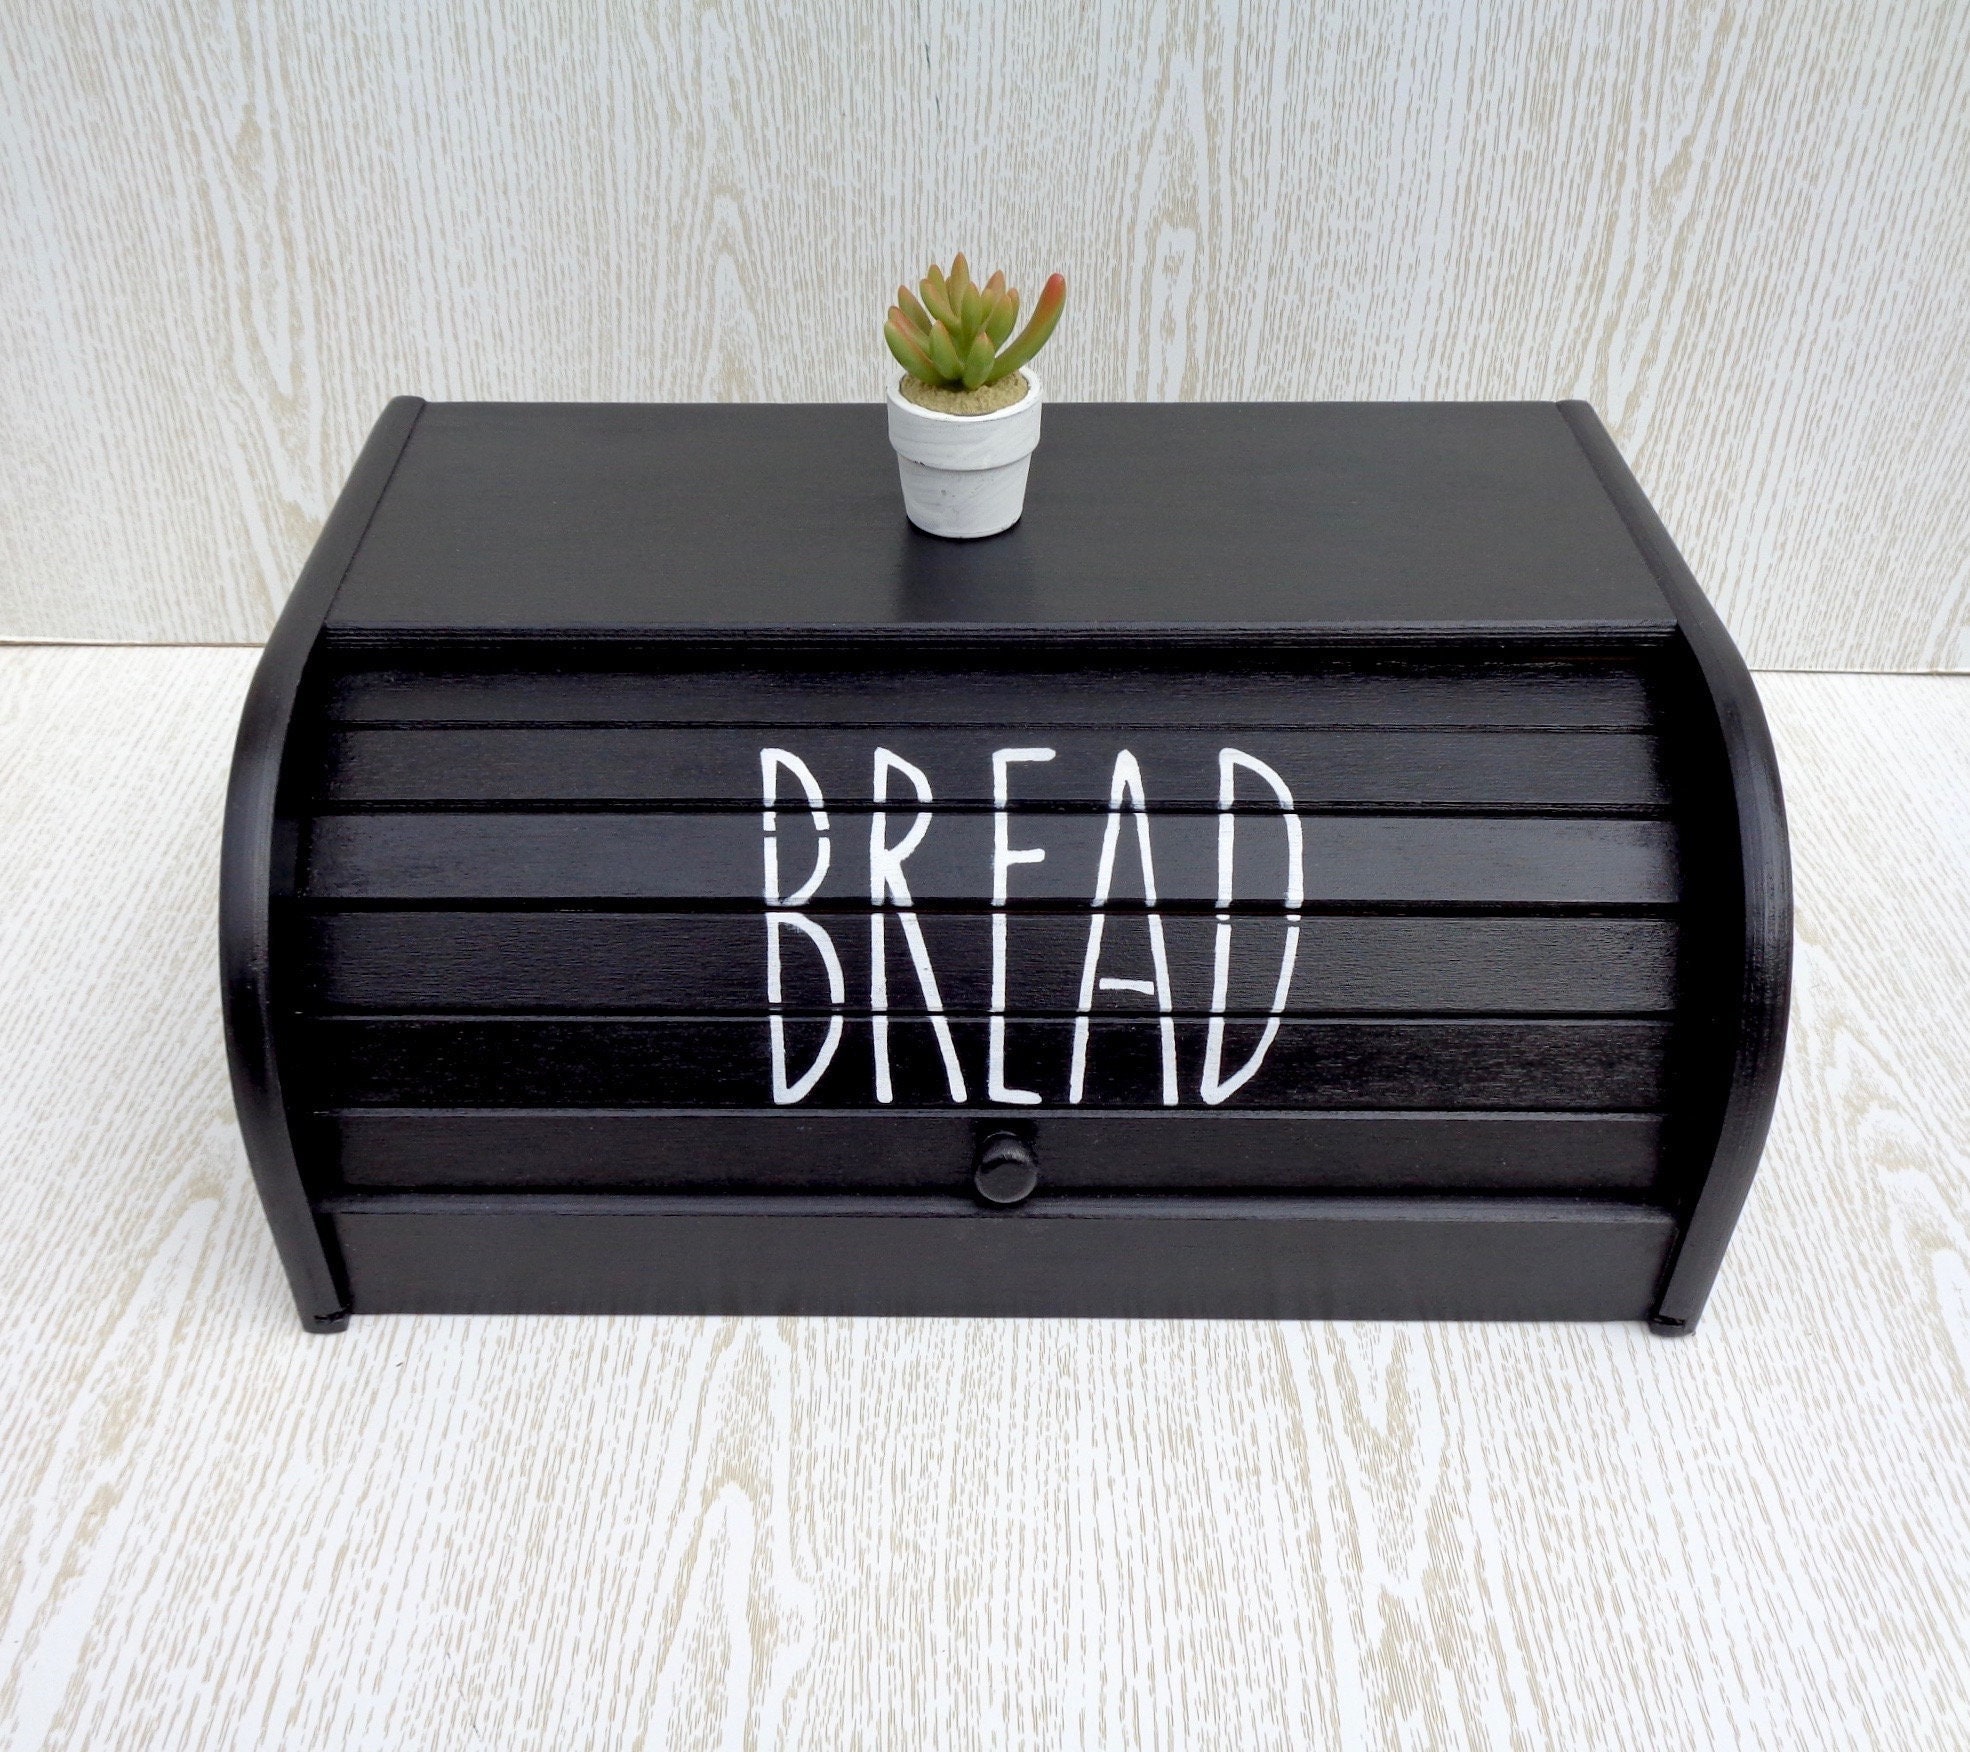 OKUMEYR Box Bread Storage Box Farmhouse Kitchen Black and White